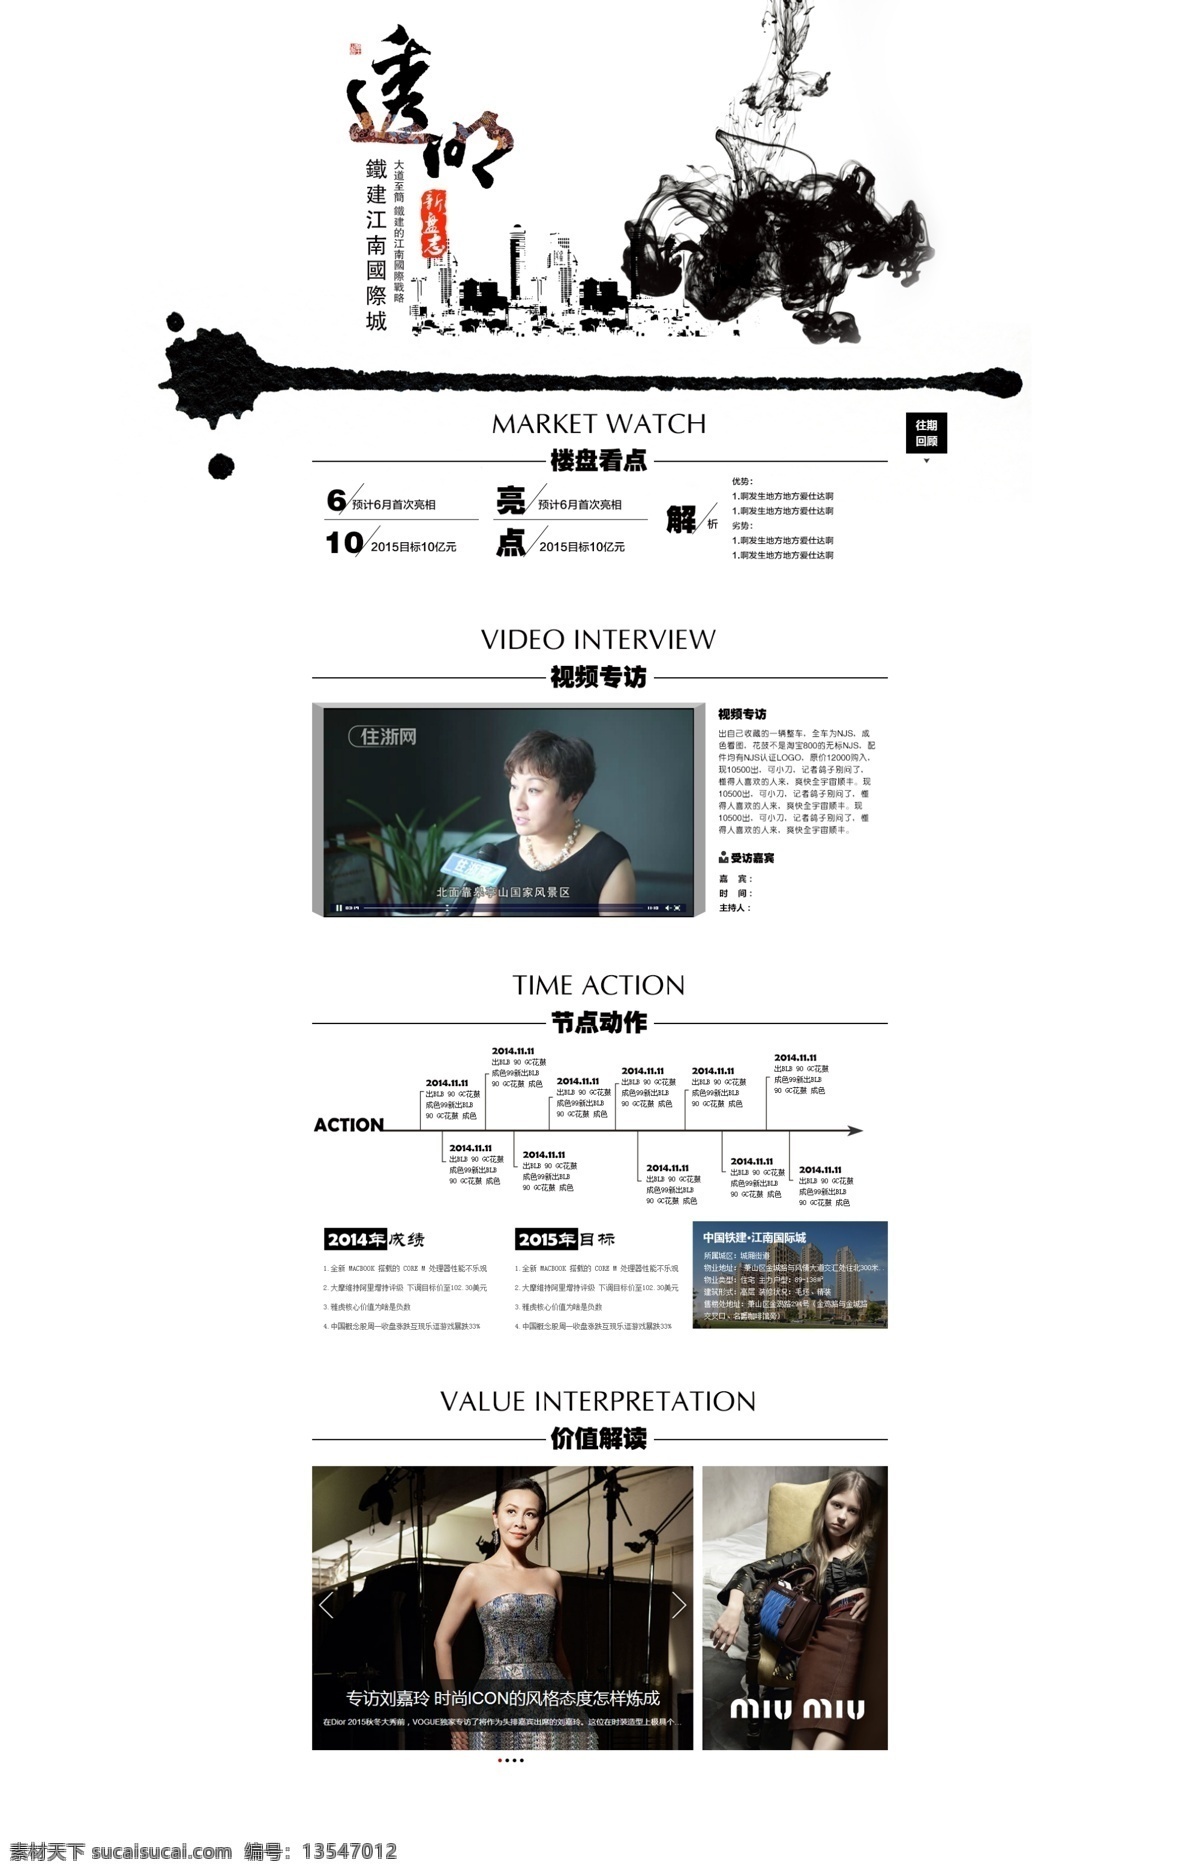 中国 风 网页模板 建筑 banner 公司网页 黑白 水墨 透明 中国风 专题 简洁 web 界面设计 中文模板 白色